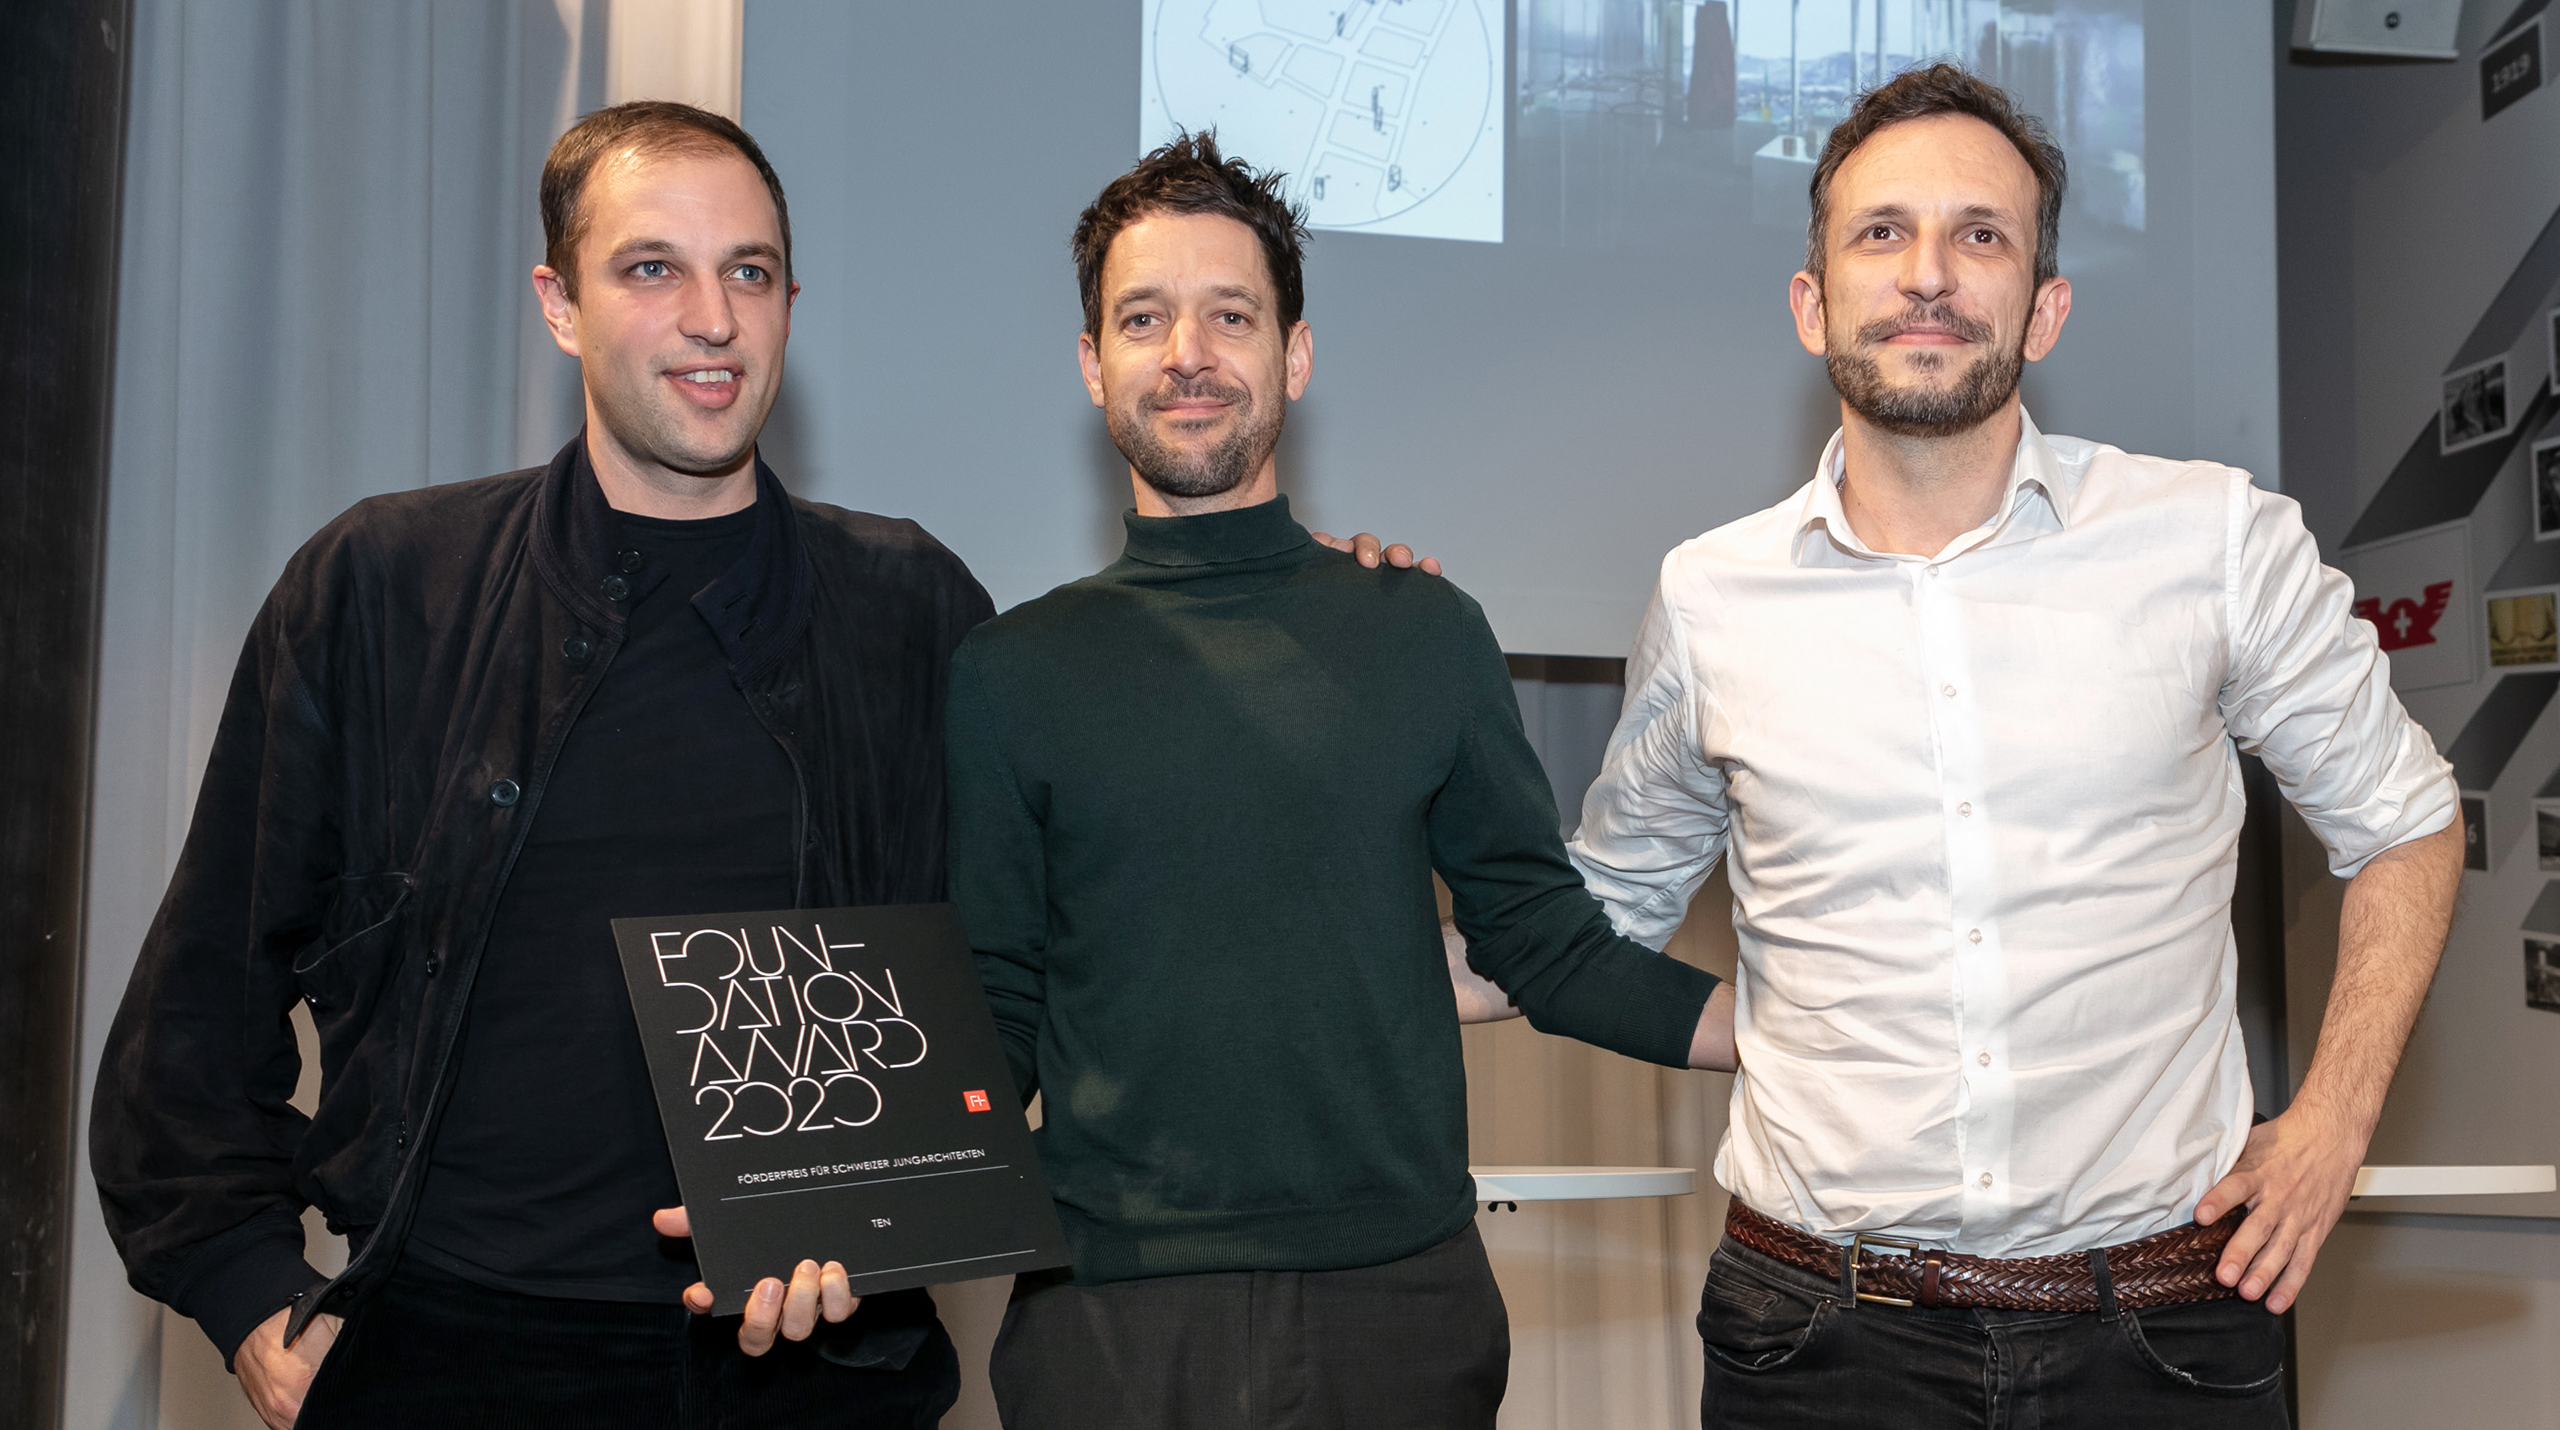 Die Gewinner des Foundation Award 2020 TEN, vertreten durch Nico Rothenbühler, Scott Lloyd und Nemanja Zimonjić (v. l. n. r.)